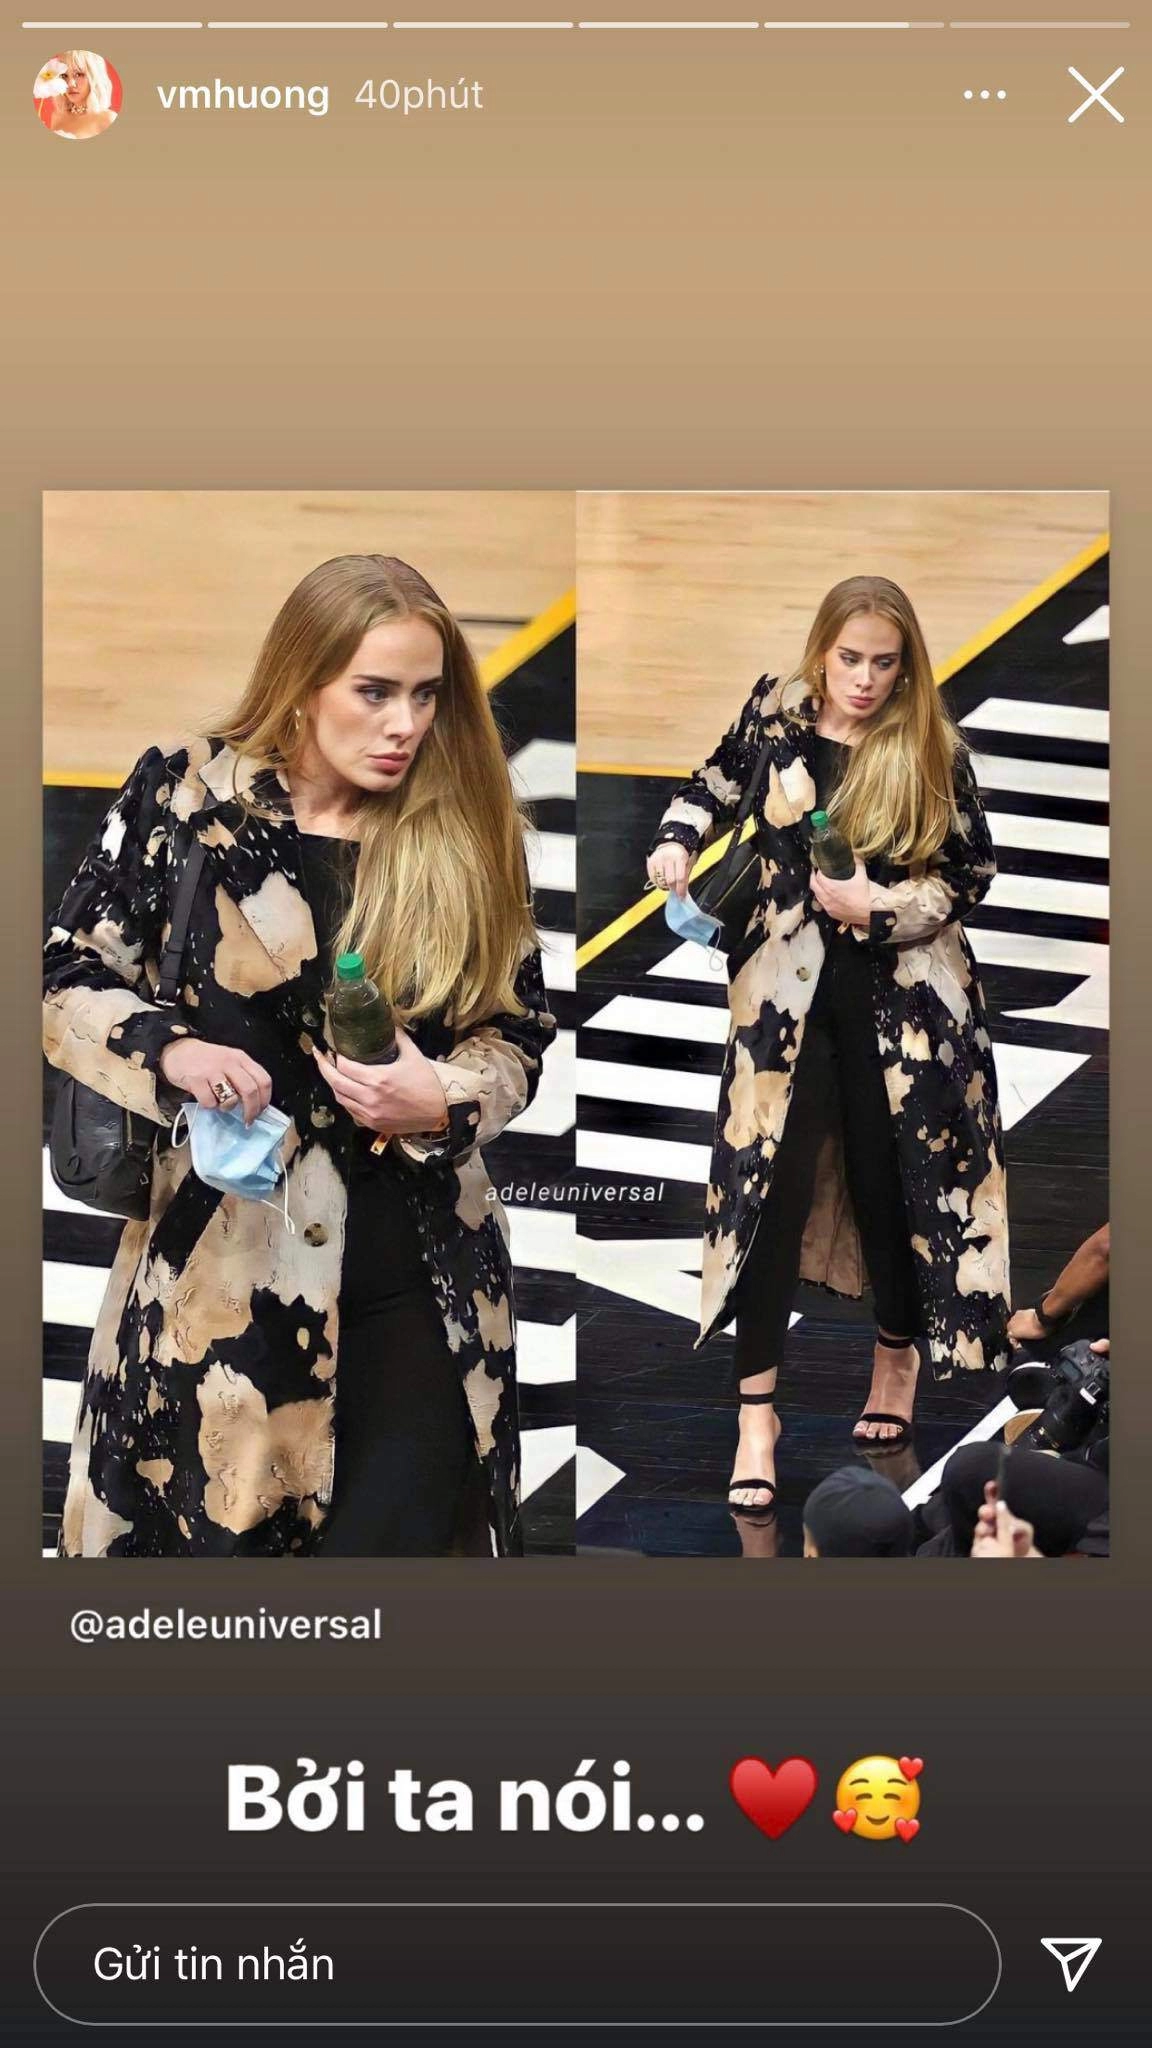 Adele tái xuất xinh đẹp thuyết phục đến mức newfeed sao việt share ảnh rần rần